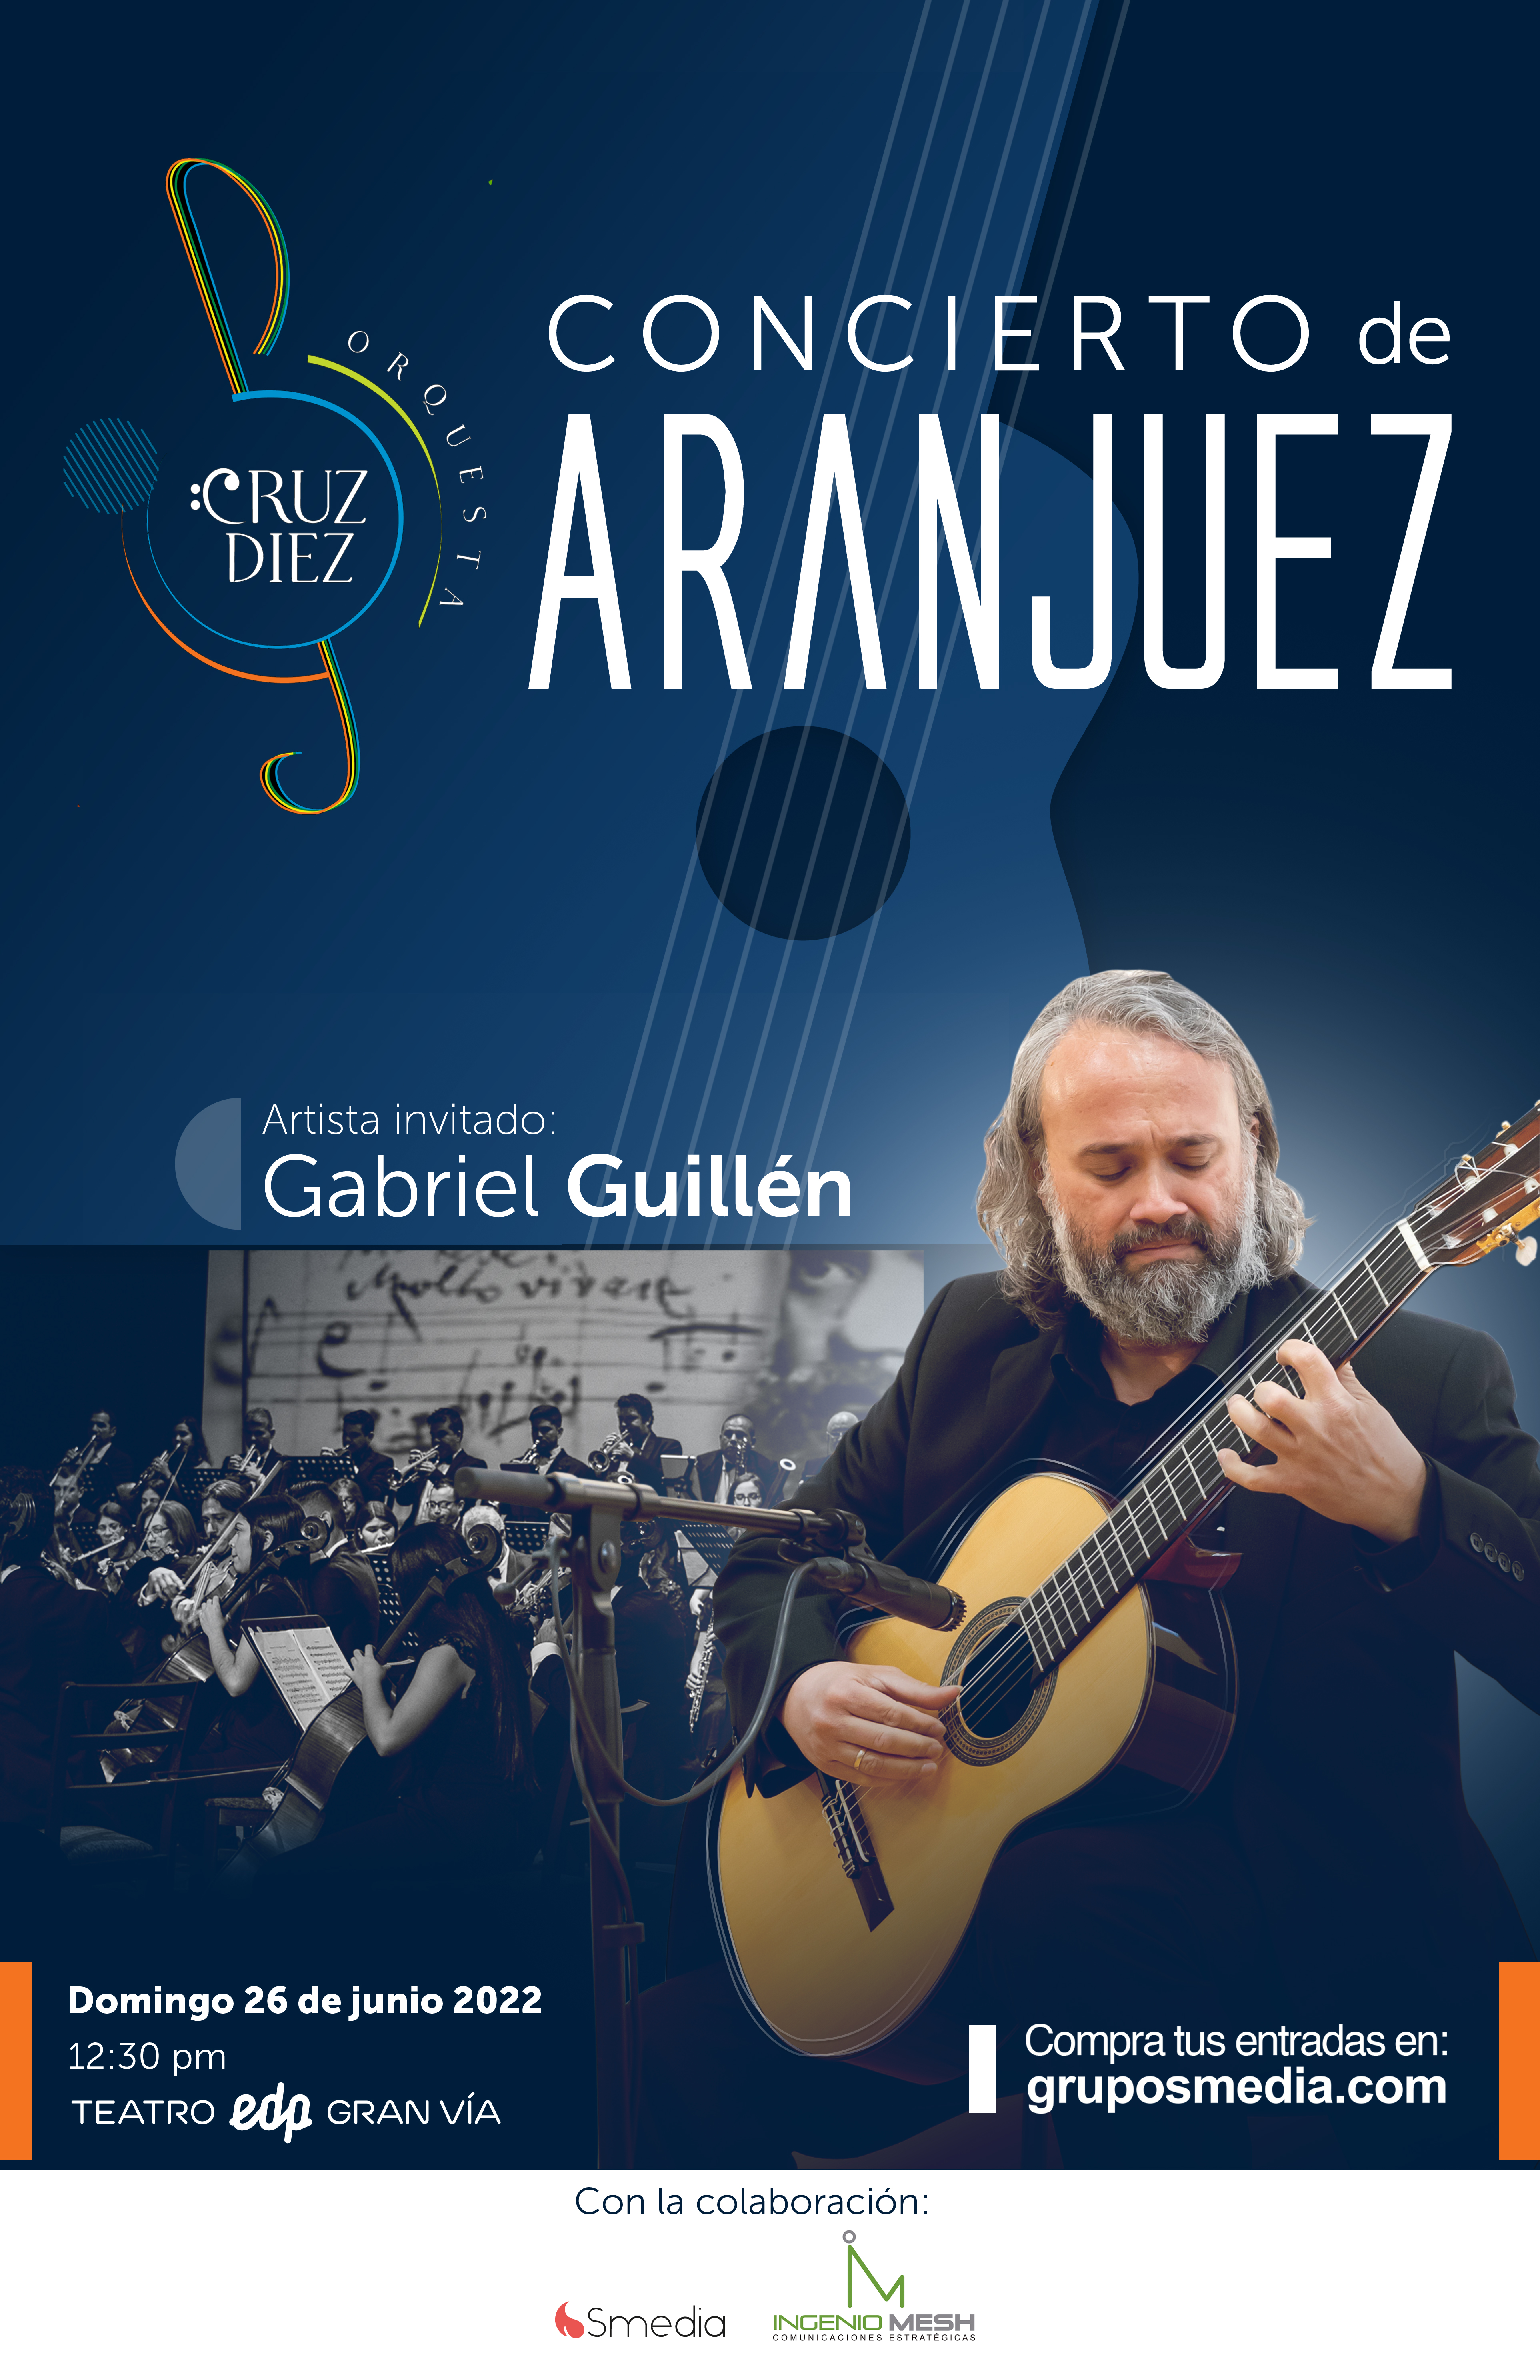 Concierto de Aranjuez de la Orquesta Sinfónica Carlos Cruz Diez 